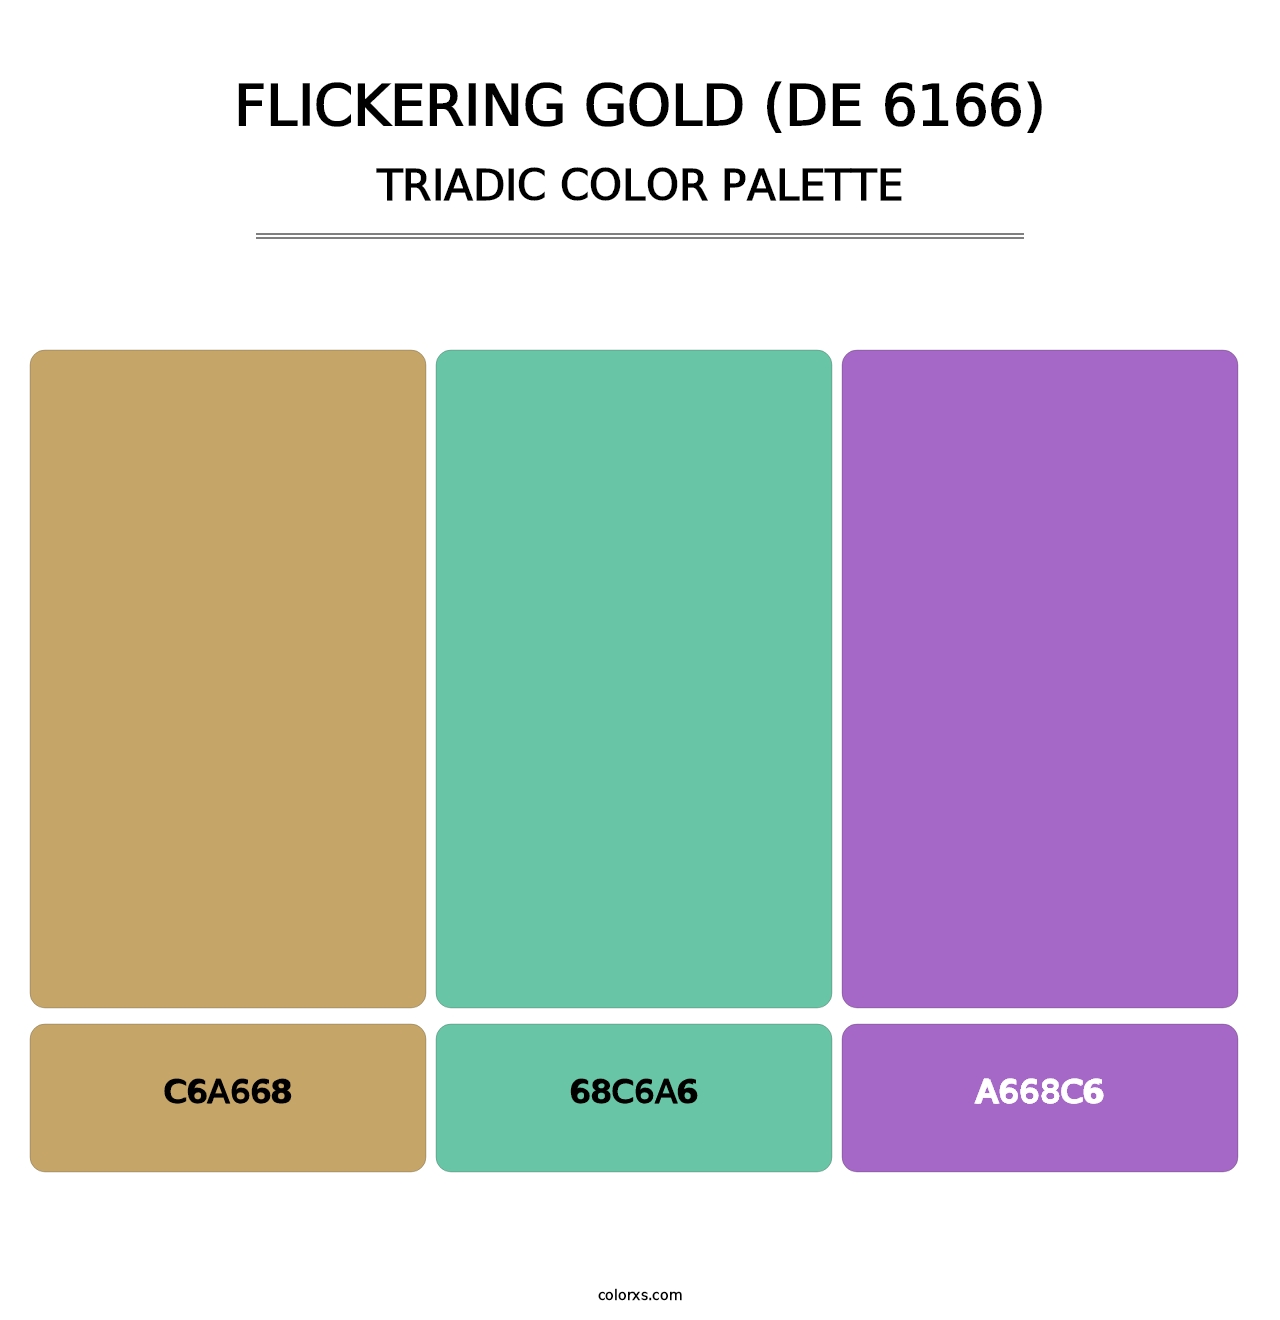 Flickering Gold (DE 6166) - Triadic Color Palette